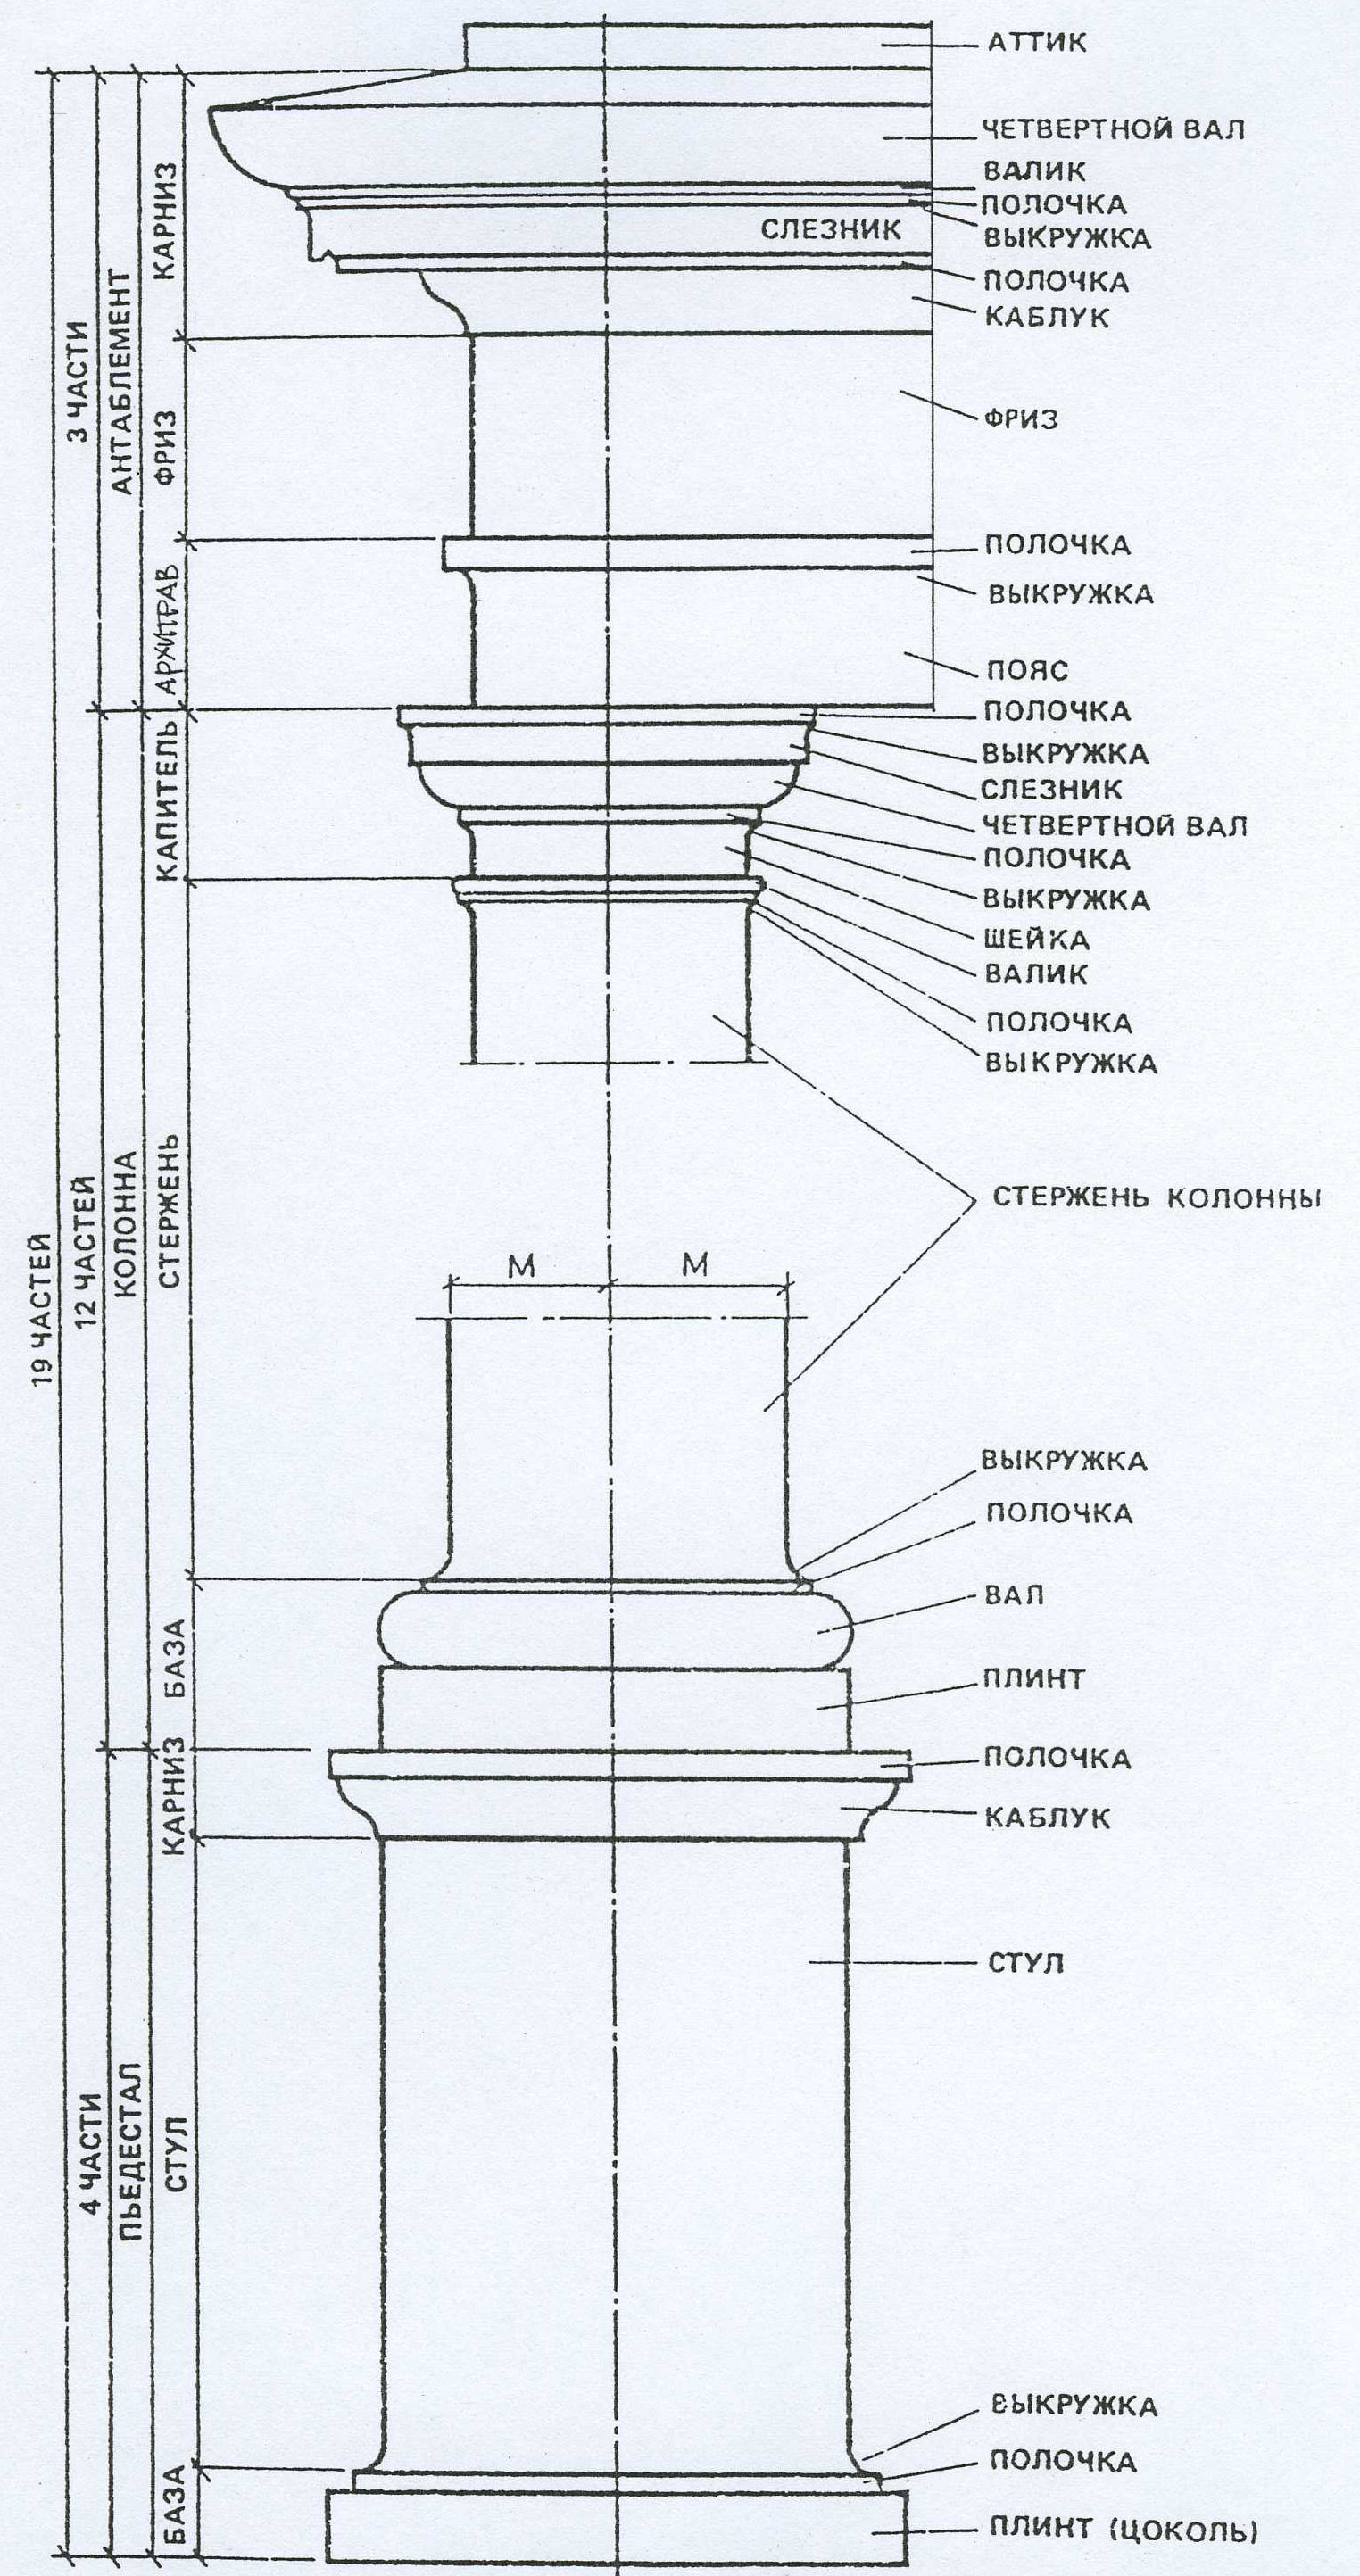 Утолщение колонны в средней ее части в архитектуре